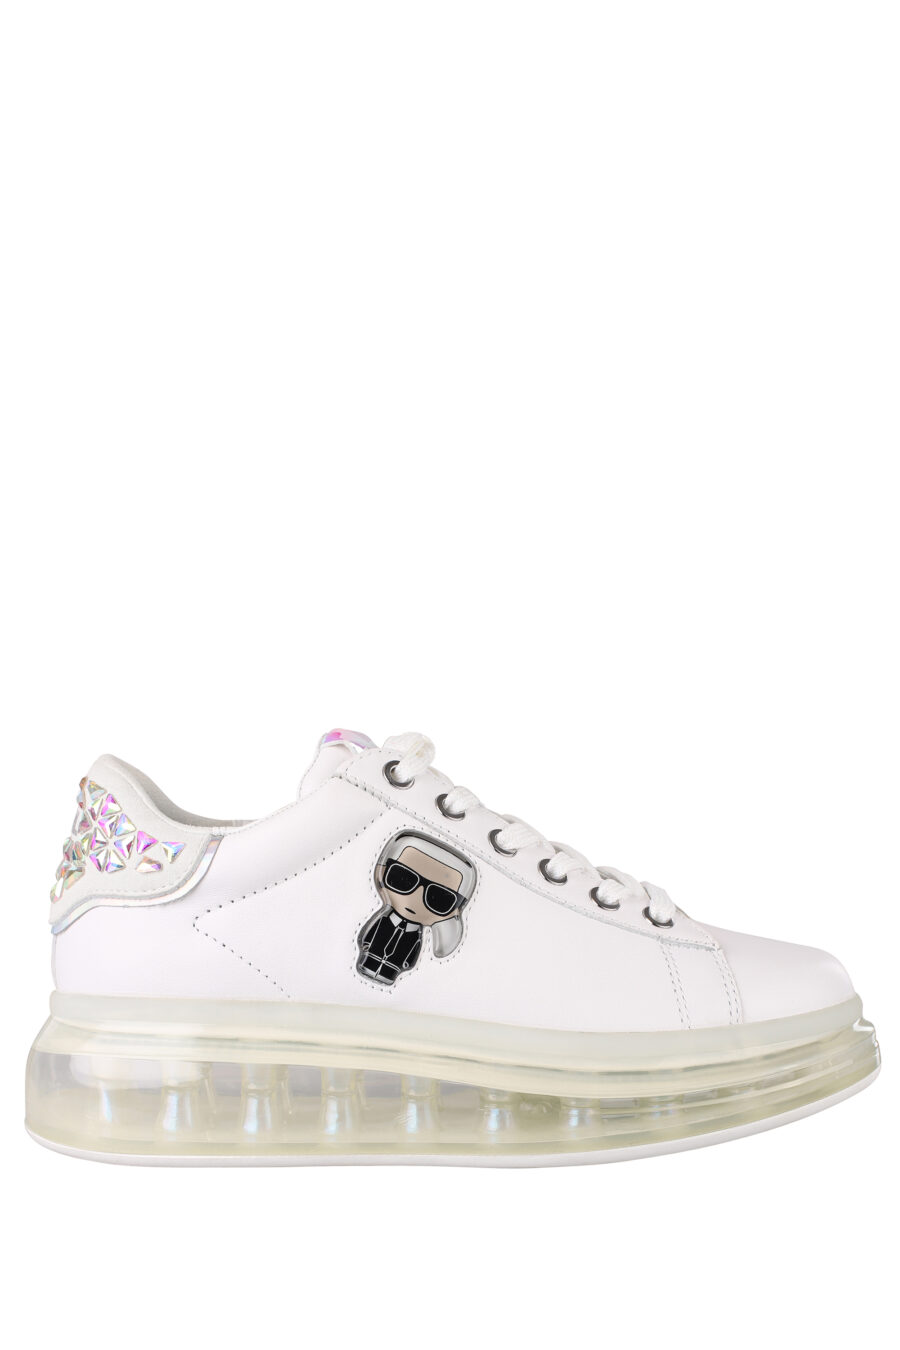 Zapatillas blancas con suela transparente y detalles en strass - IMG 1350